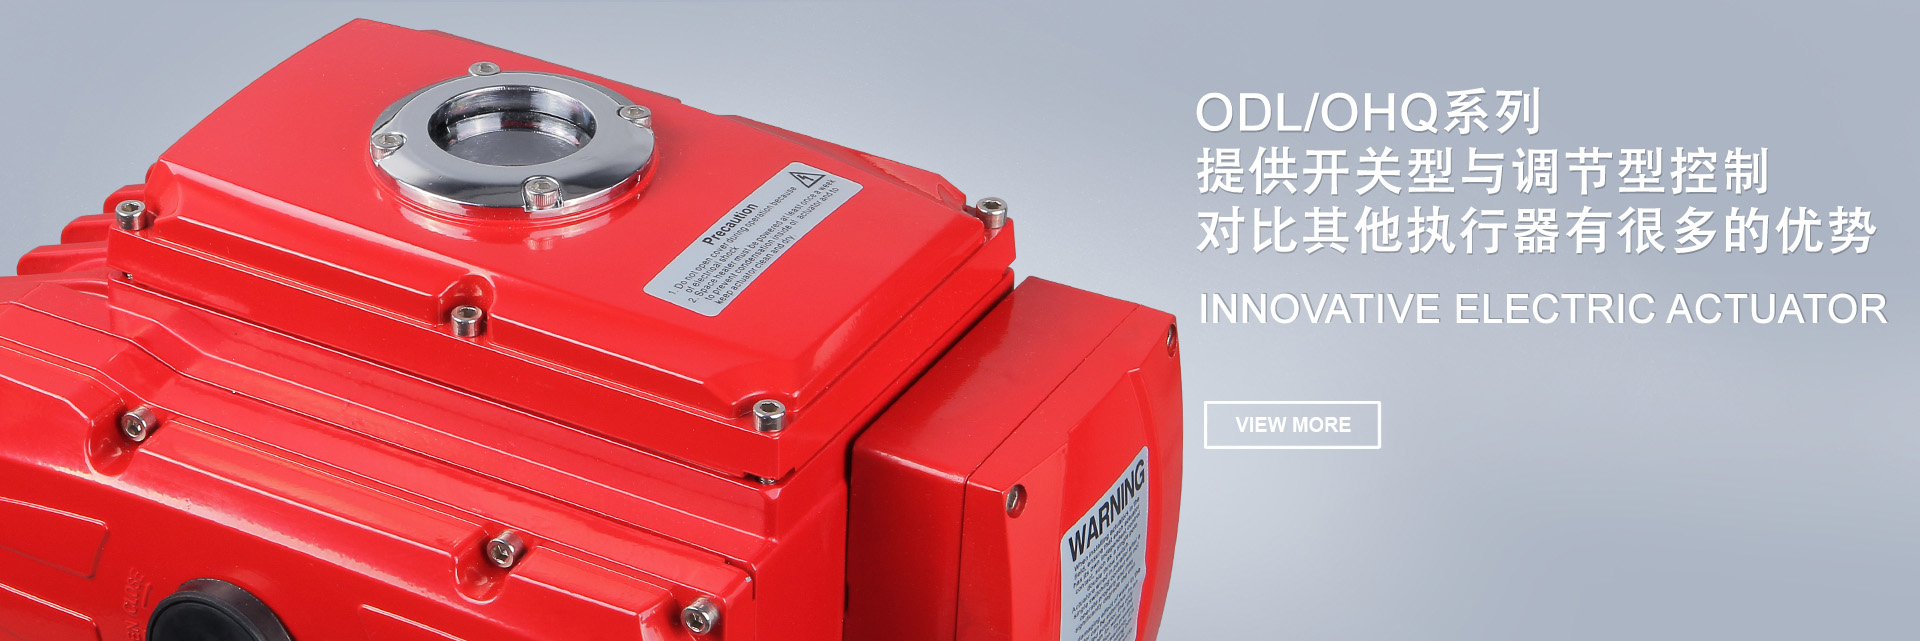 ODL/OHQ系列提供開關型與調節型執行器